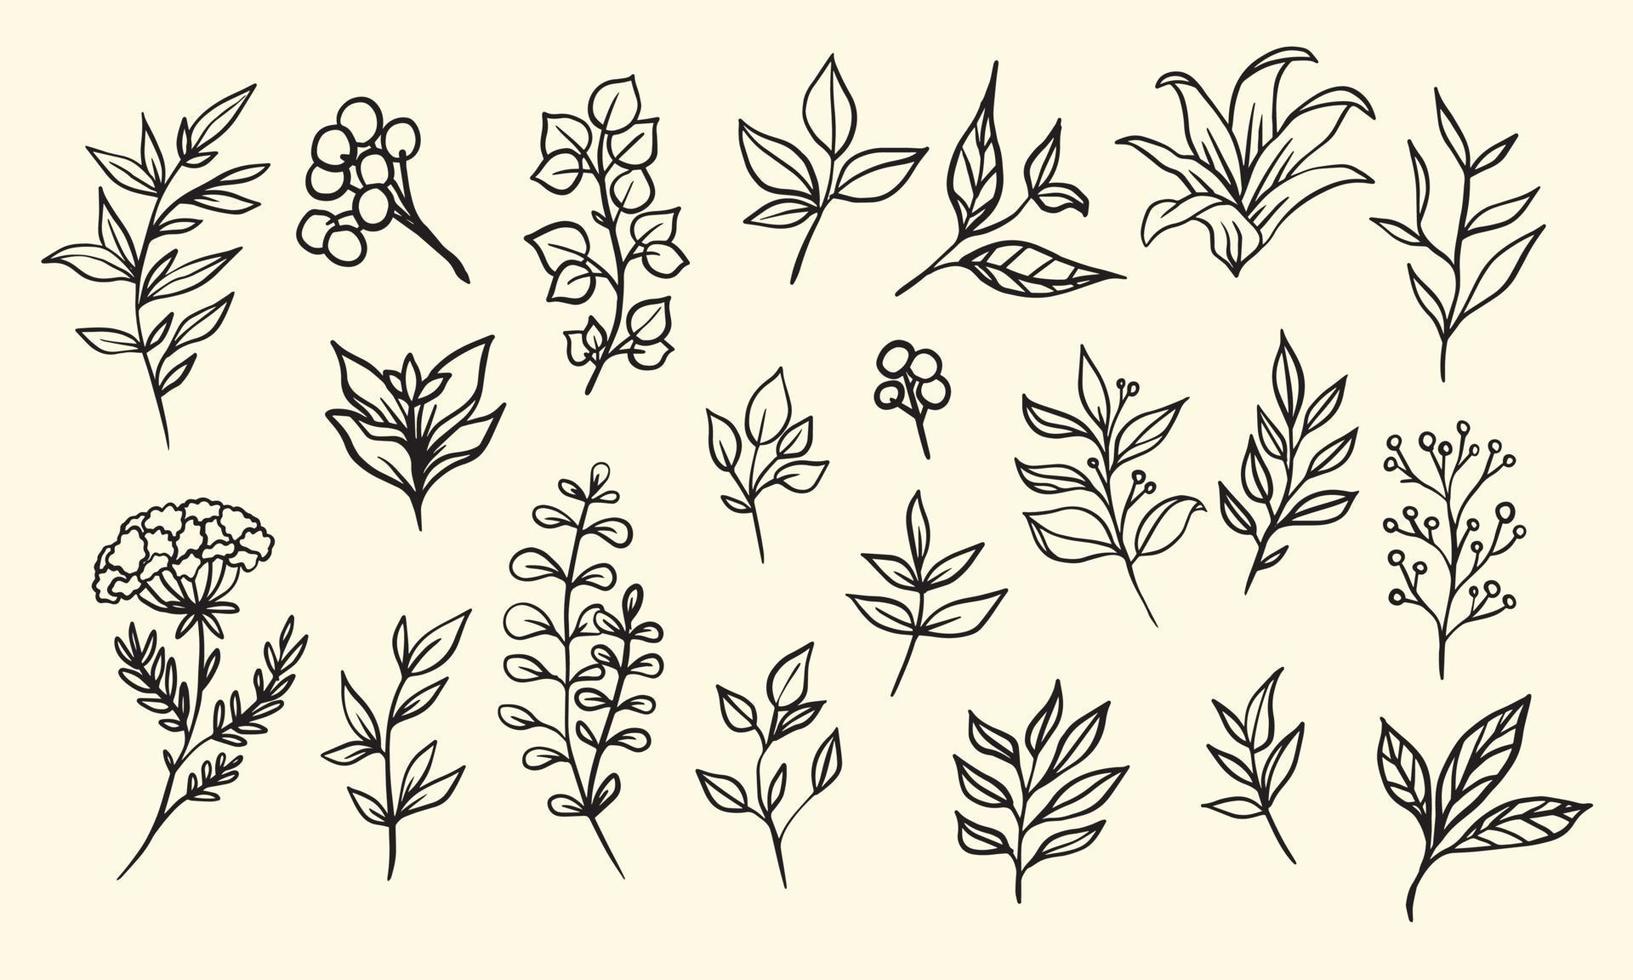 Satz von handgezeichneten Blattvektorillustrationen, isolierte grafische Elemente der Blume lineart für Ihr Design, florale Lineart für klassisches Design vektor